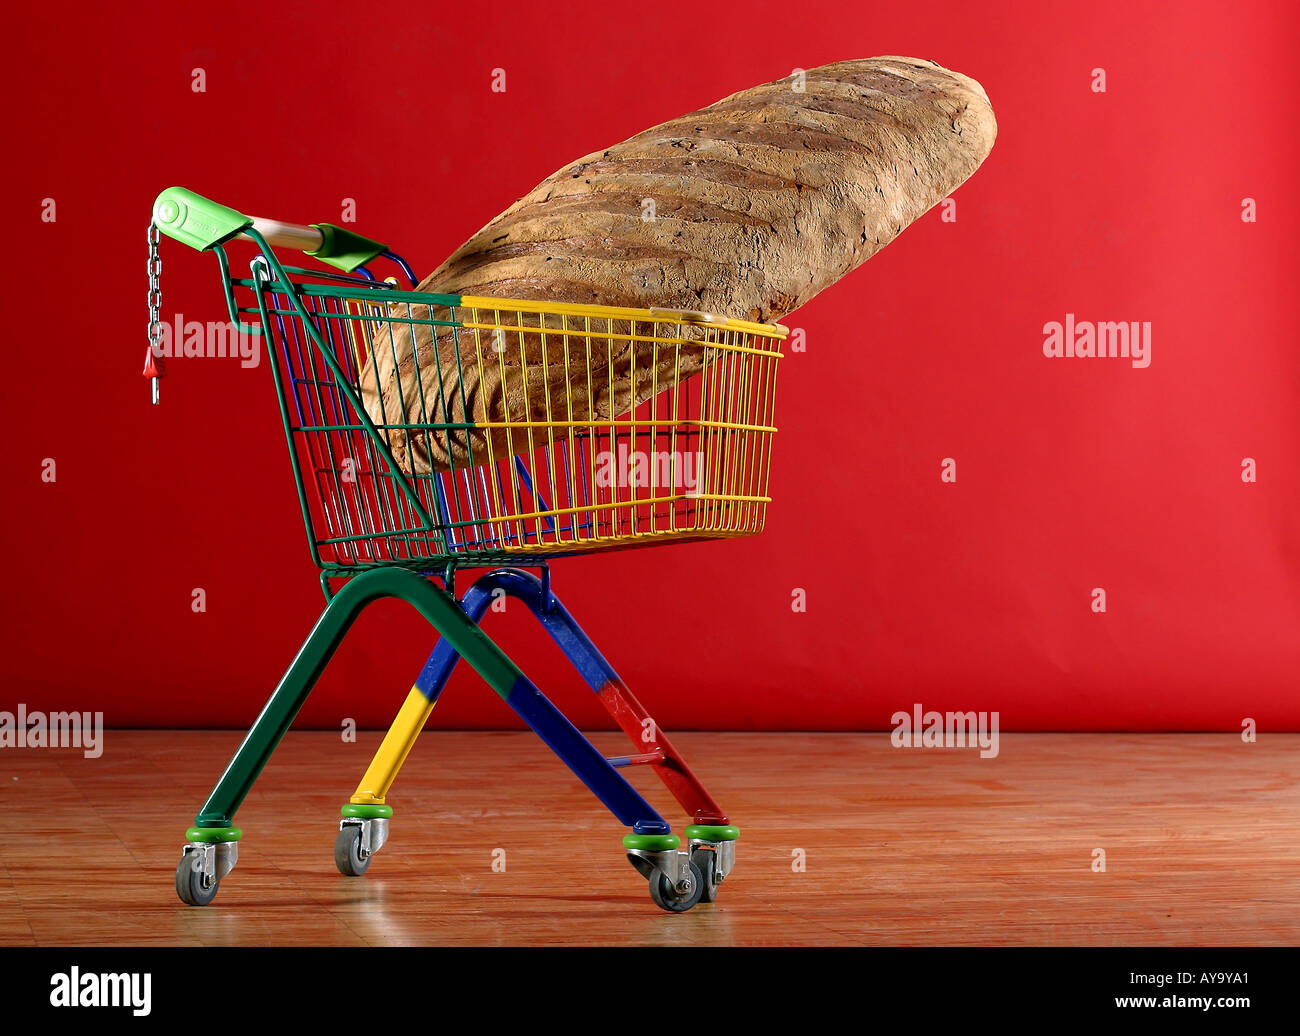 Riesiges Brot in buntem Einkaufswagen Foto Stock